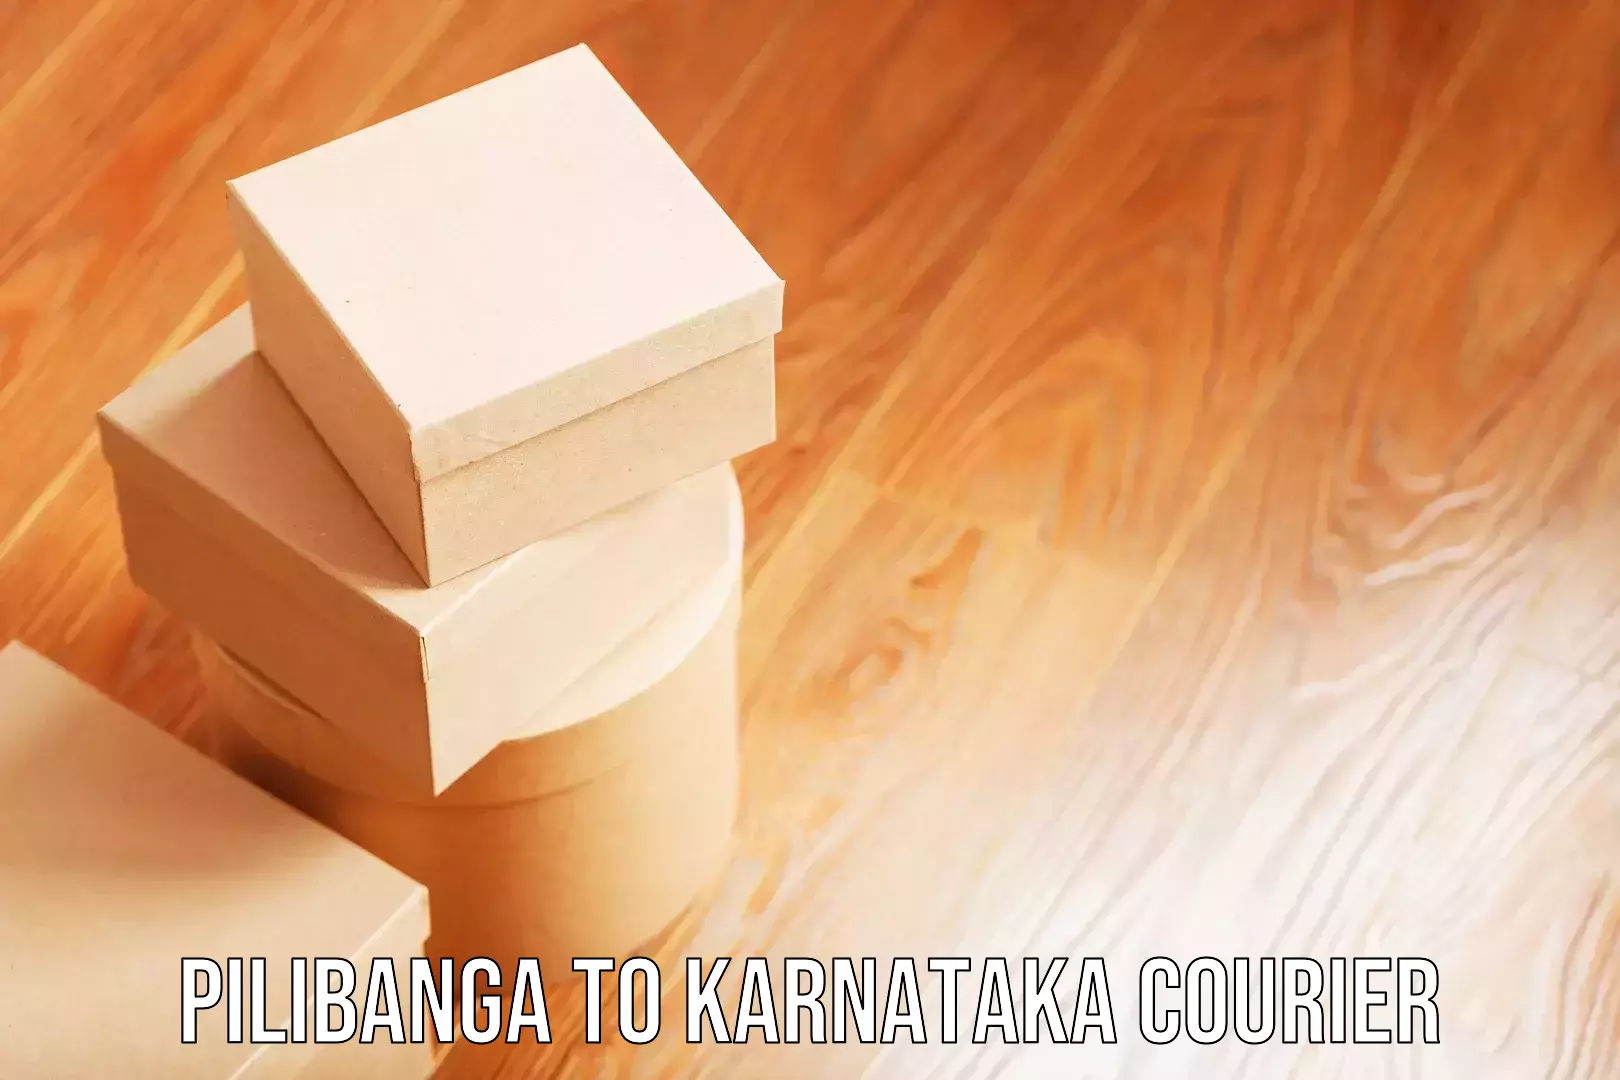 Luggage delivery news Pilibanga to Karnataka